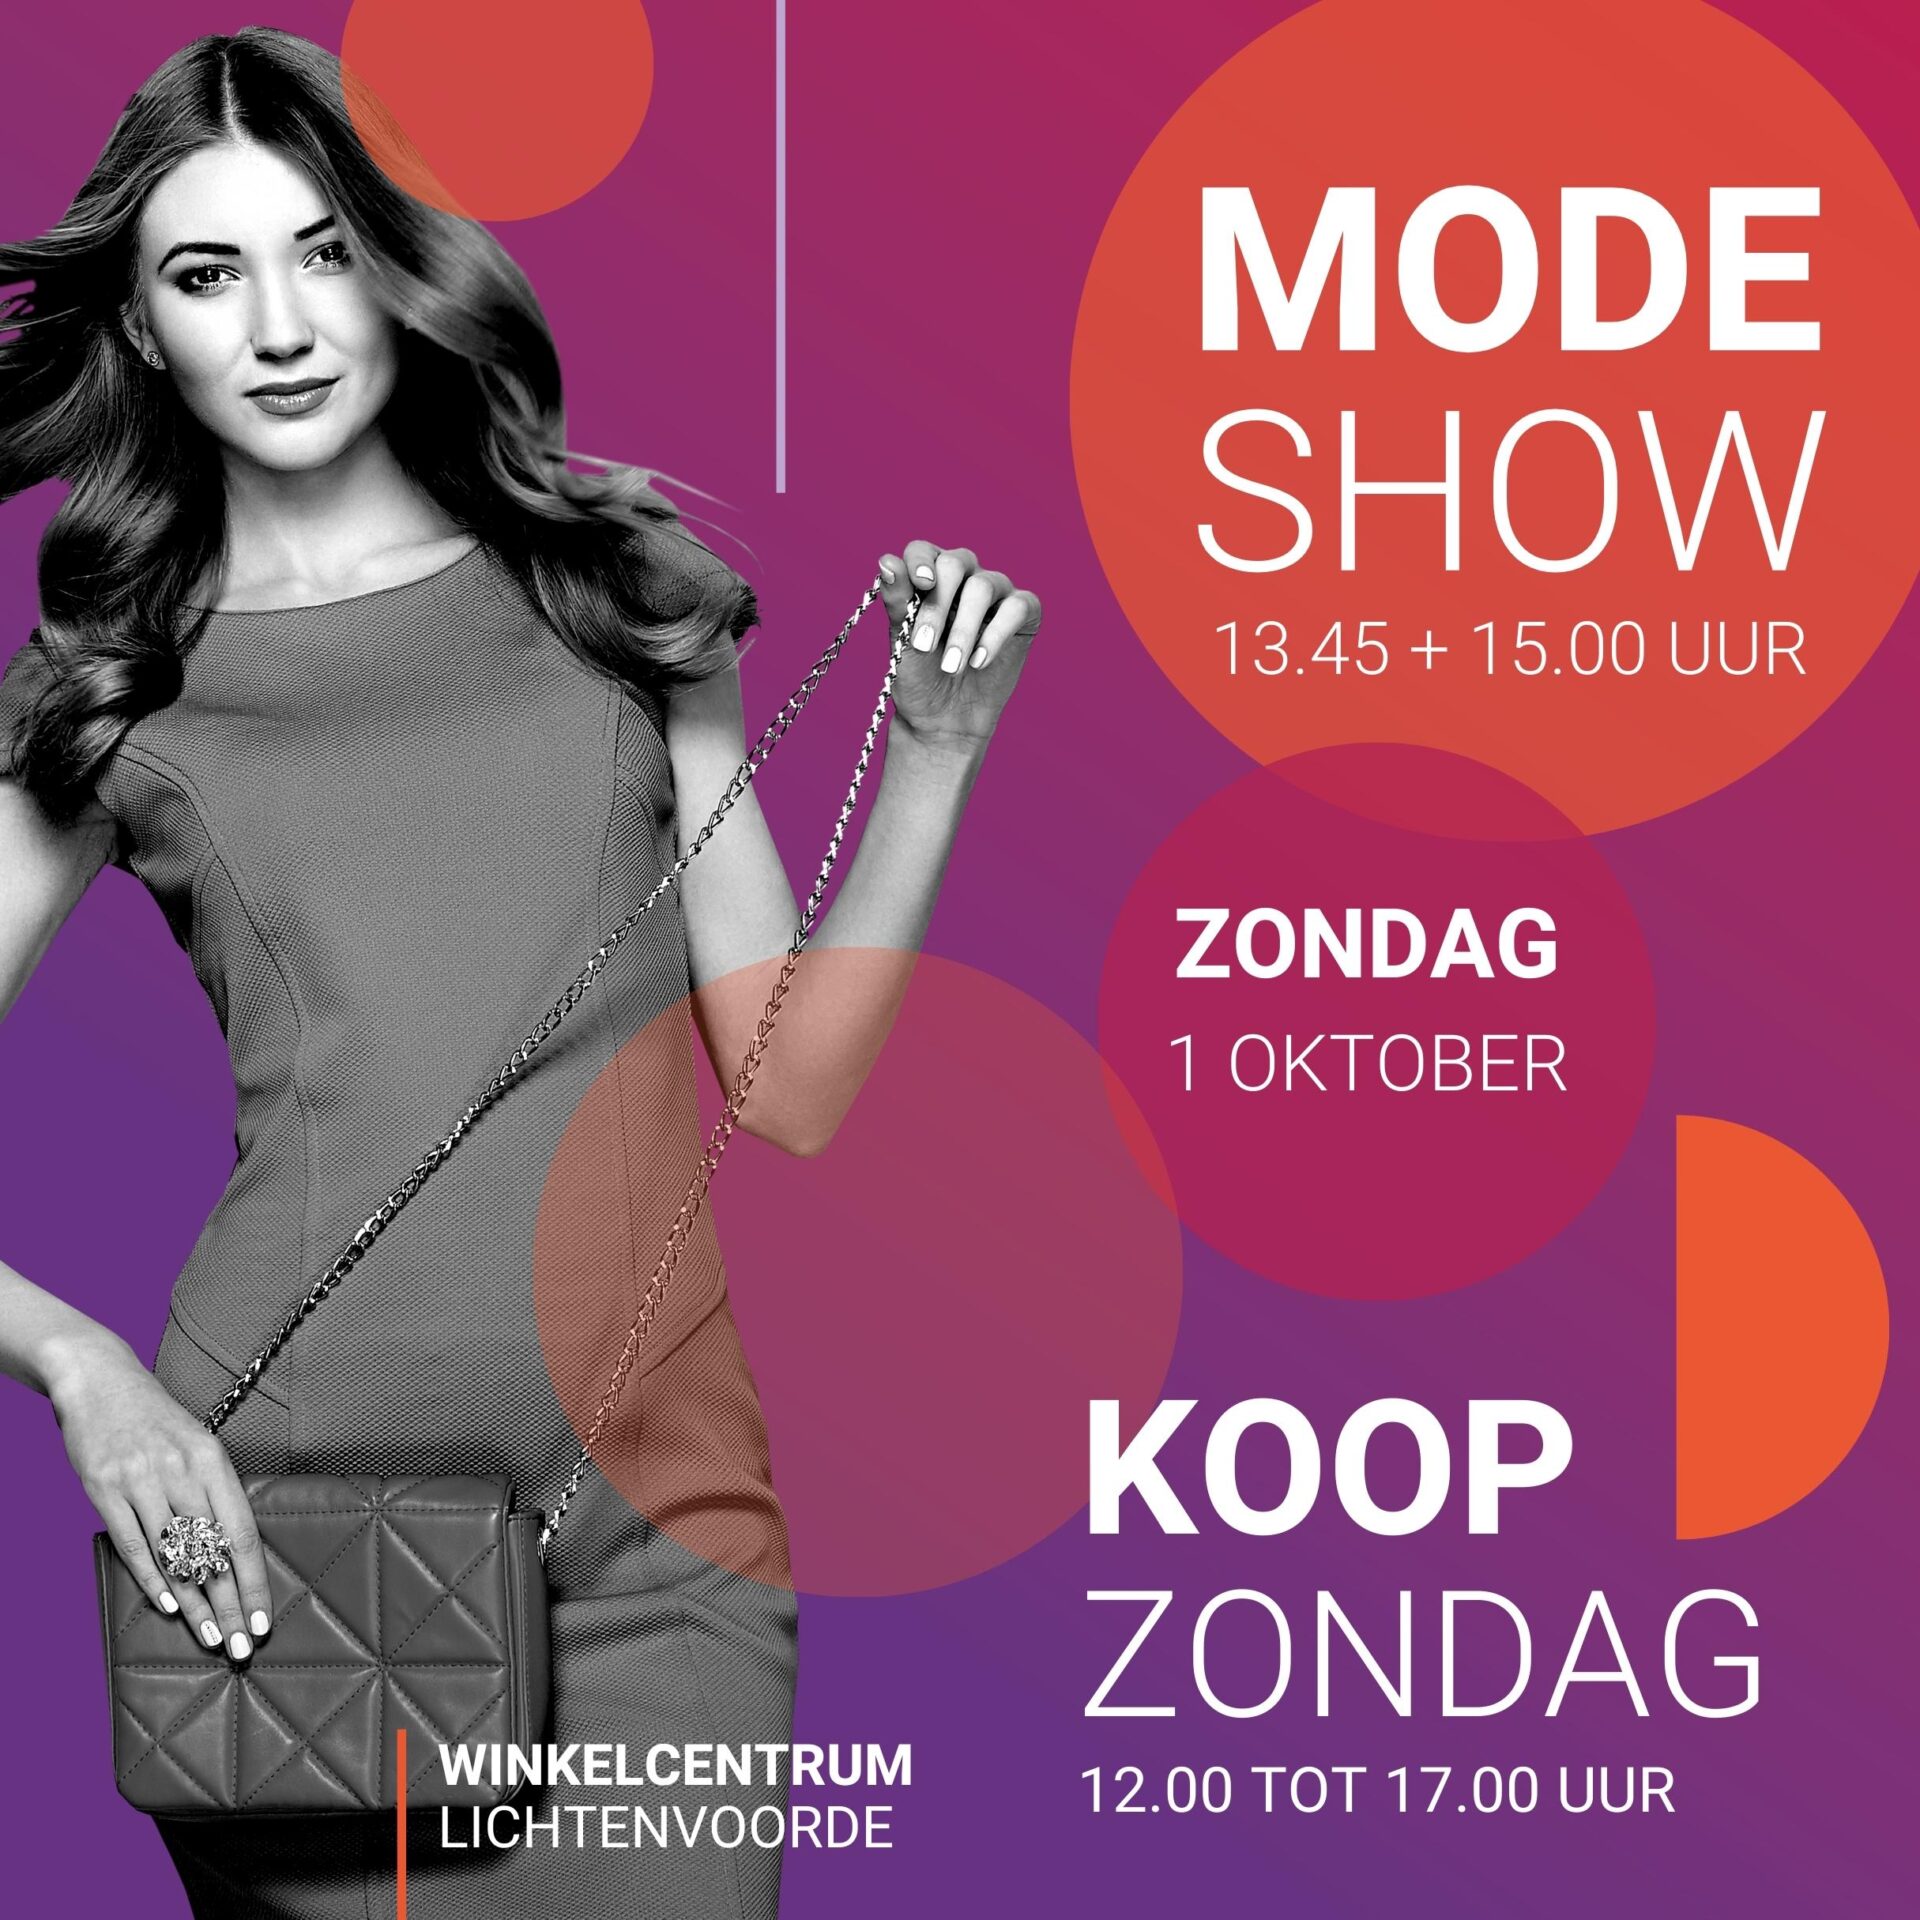 Modeshow + Koopzondag